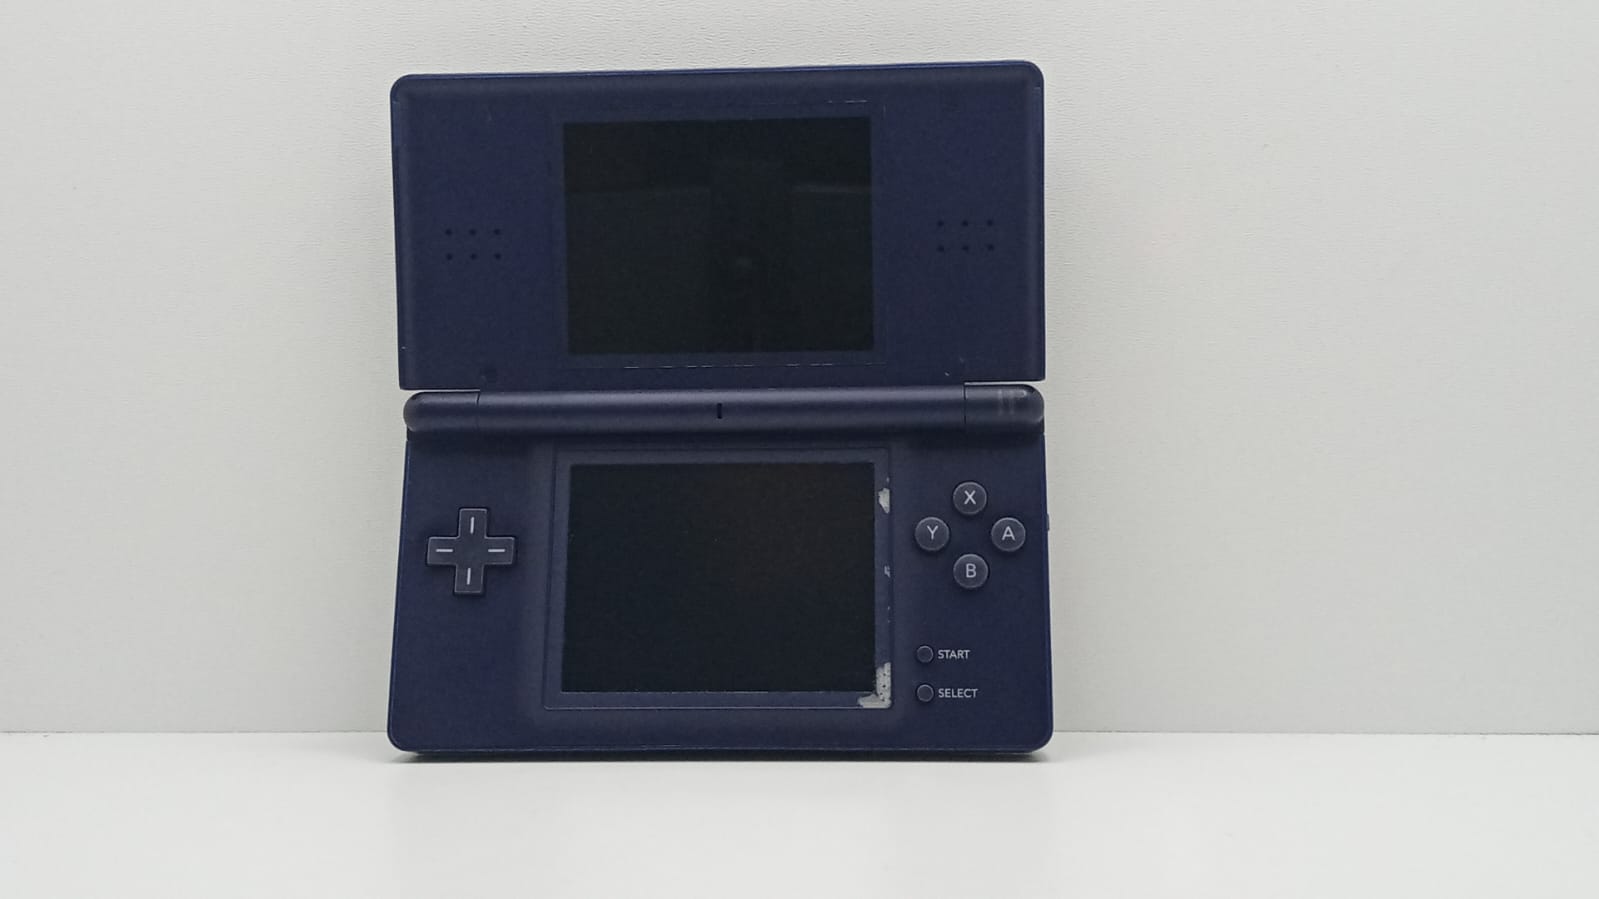 Consola Nintendo DS Lite - Dark Blue - UJF10181164